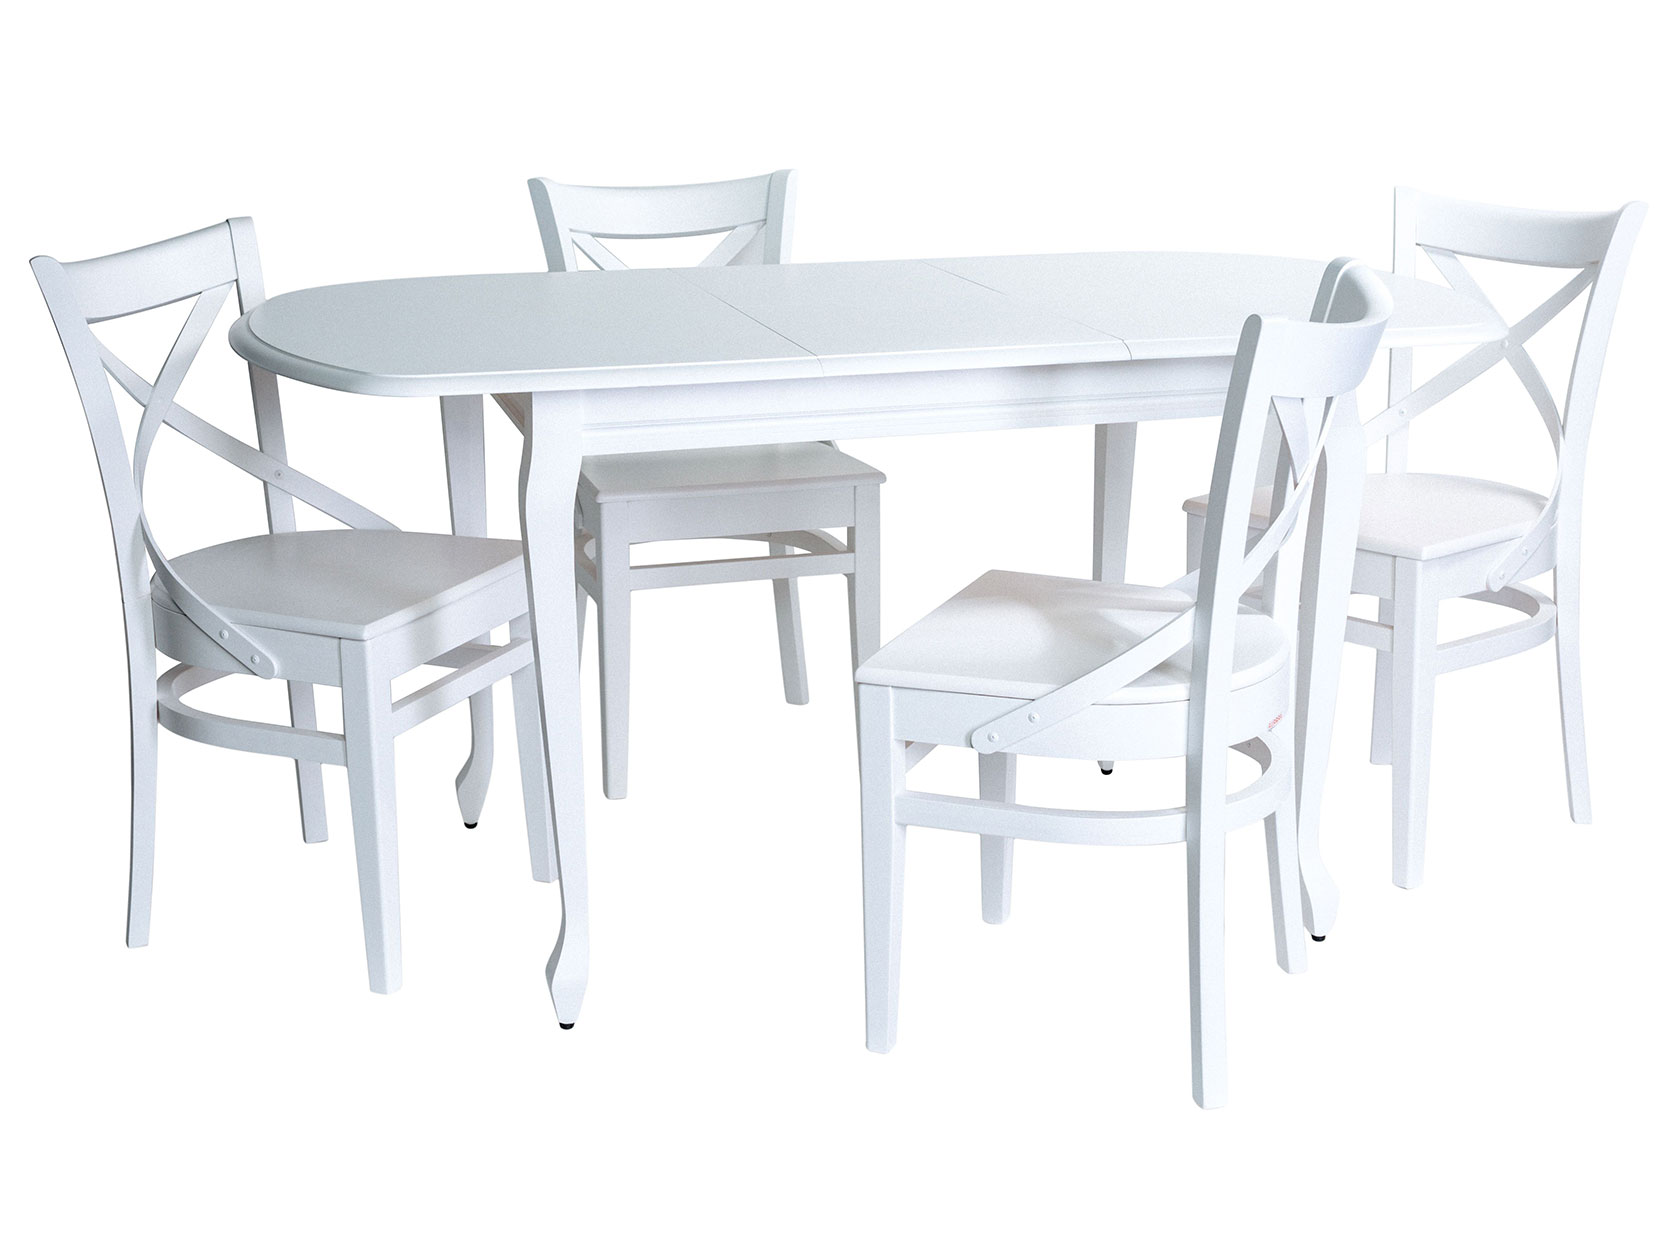 фото Обеденная группа прага стол + 4 стула соло венский жесткий белая эмаль аврора